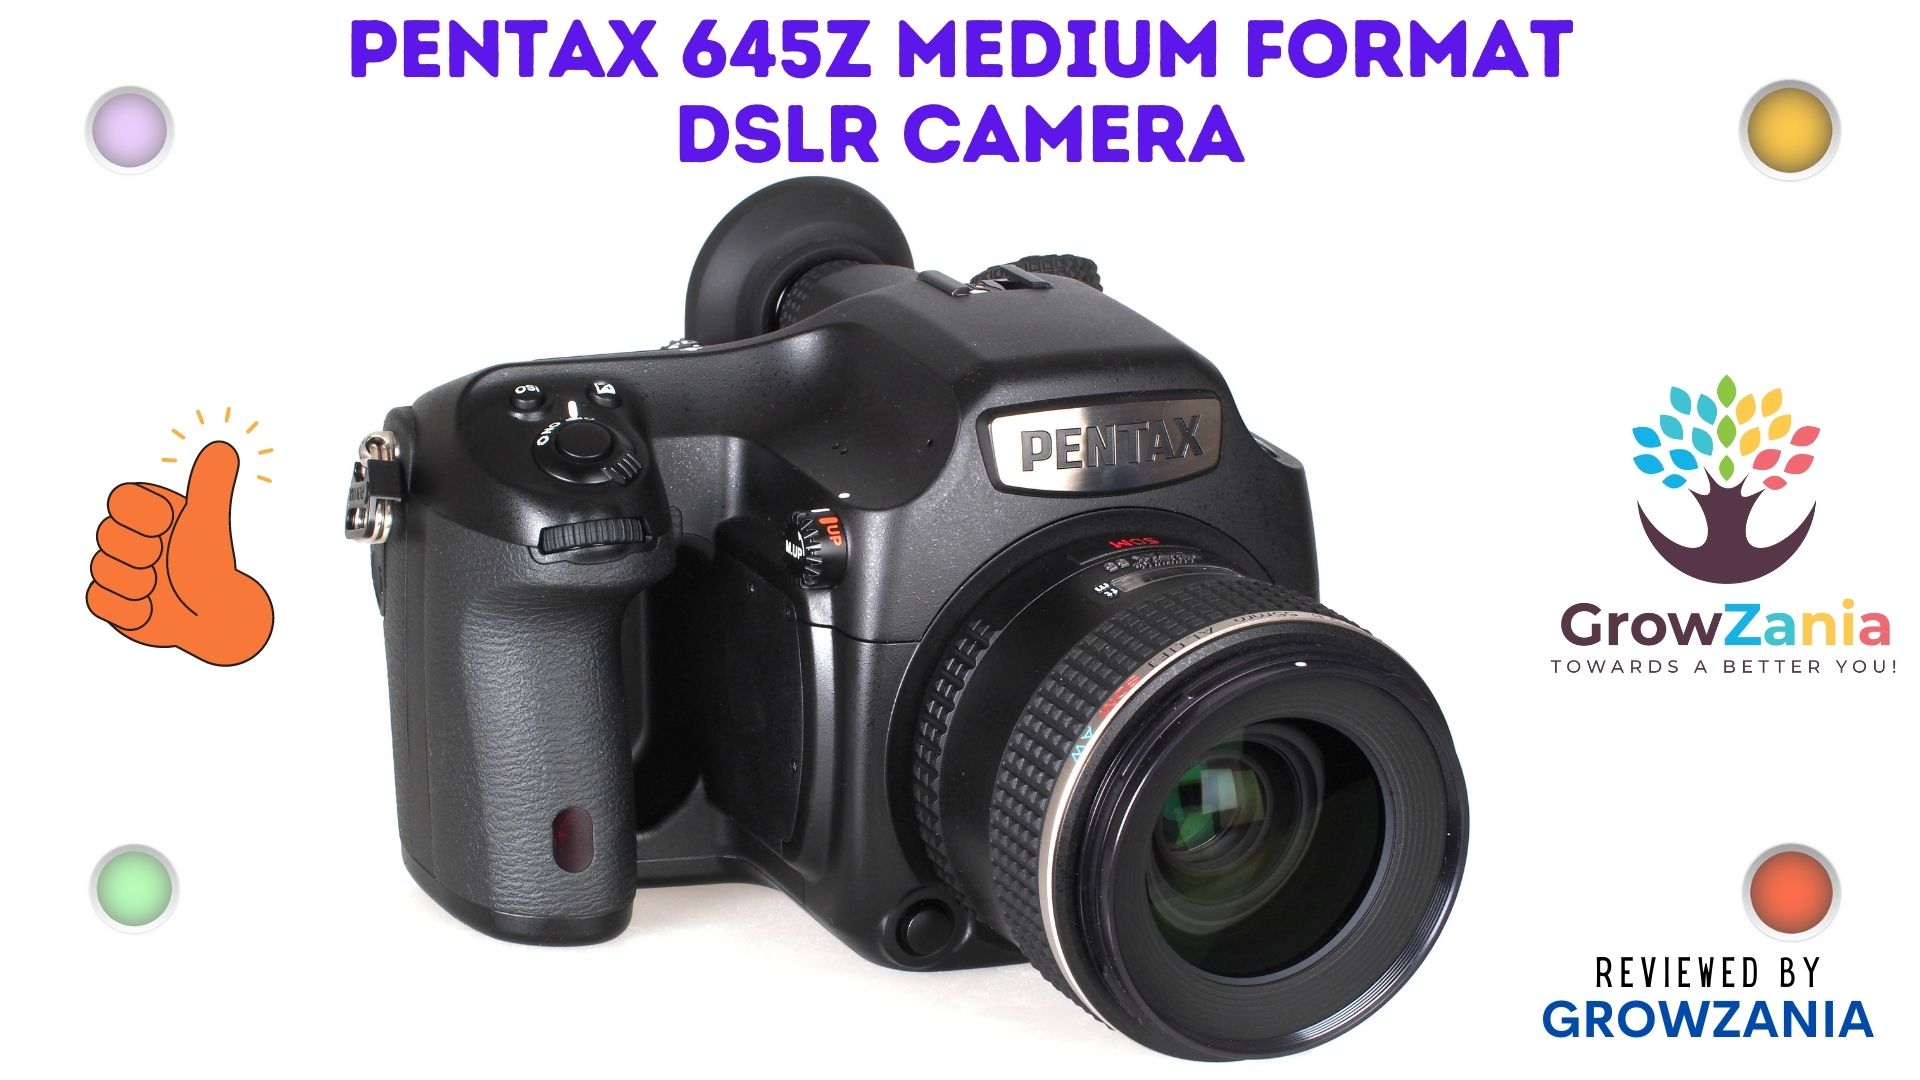 Pentax 645z Medium Format DSLR Camera